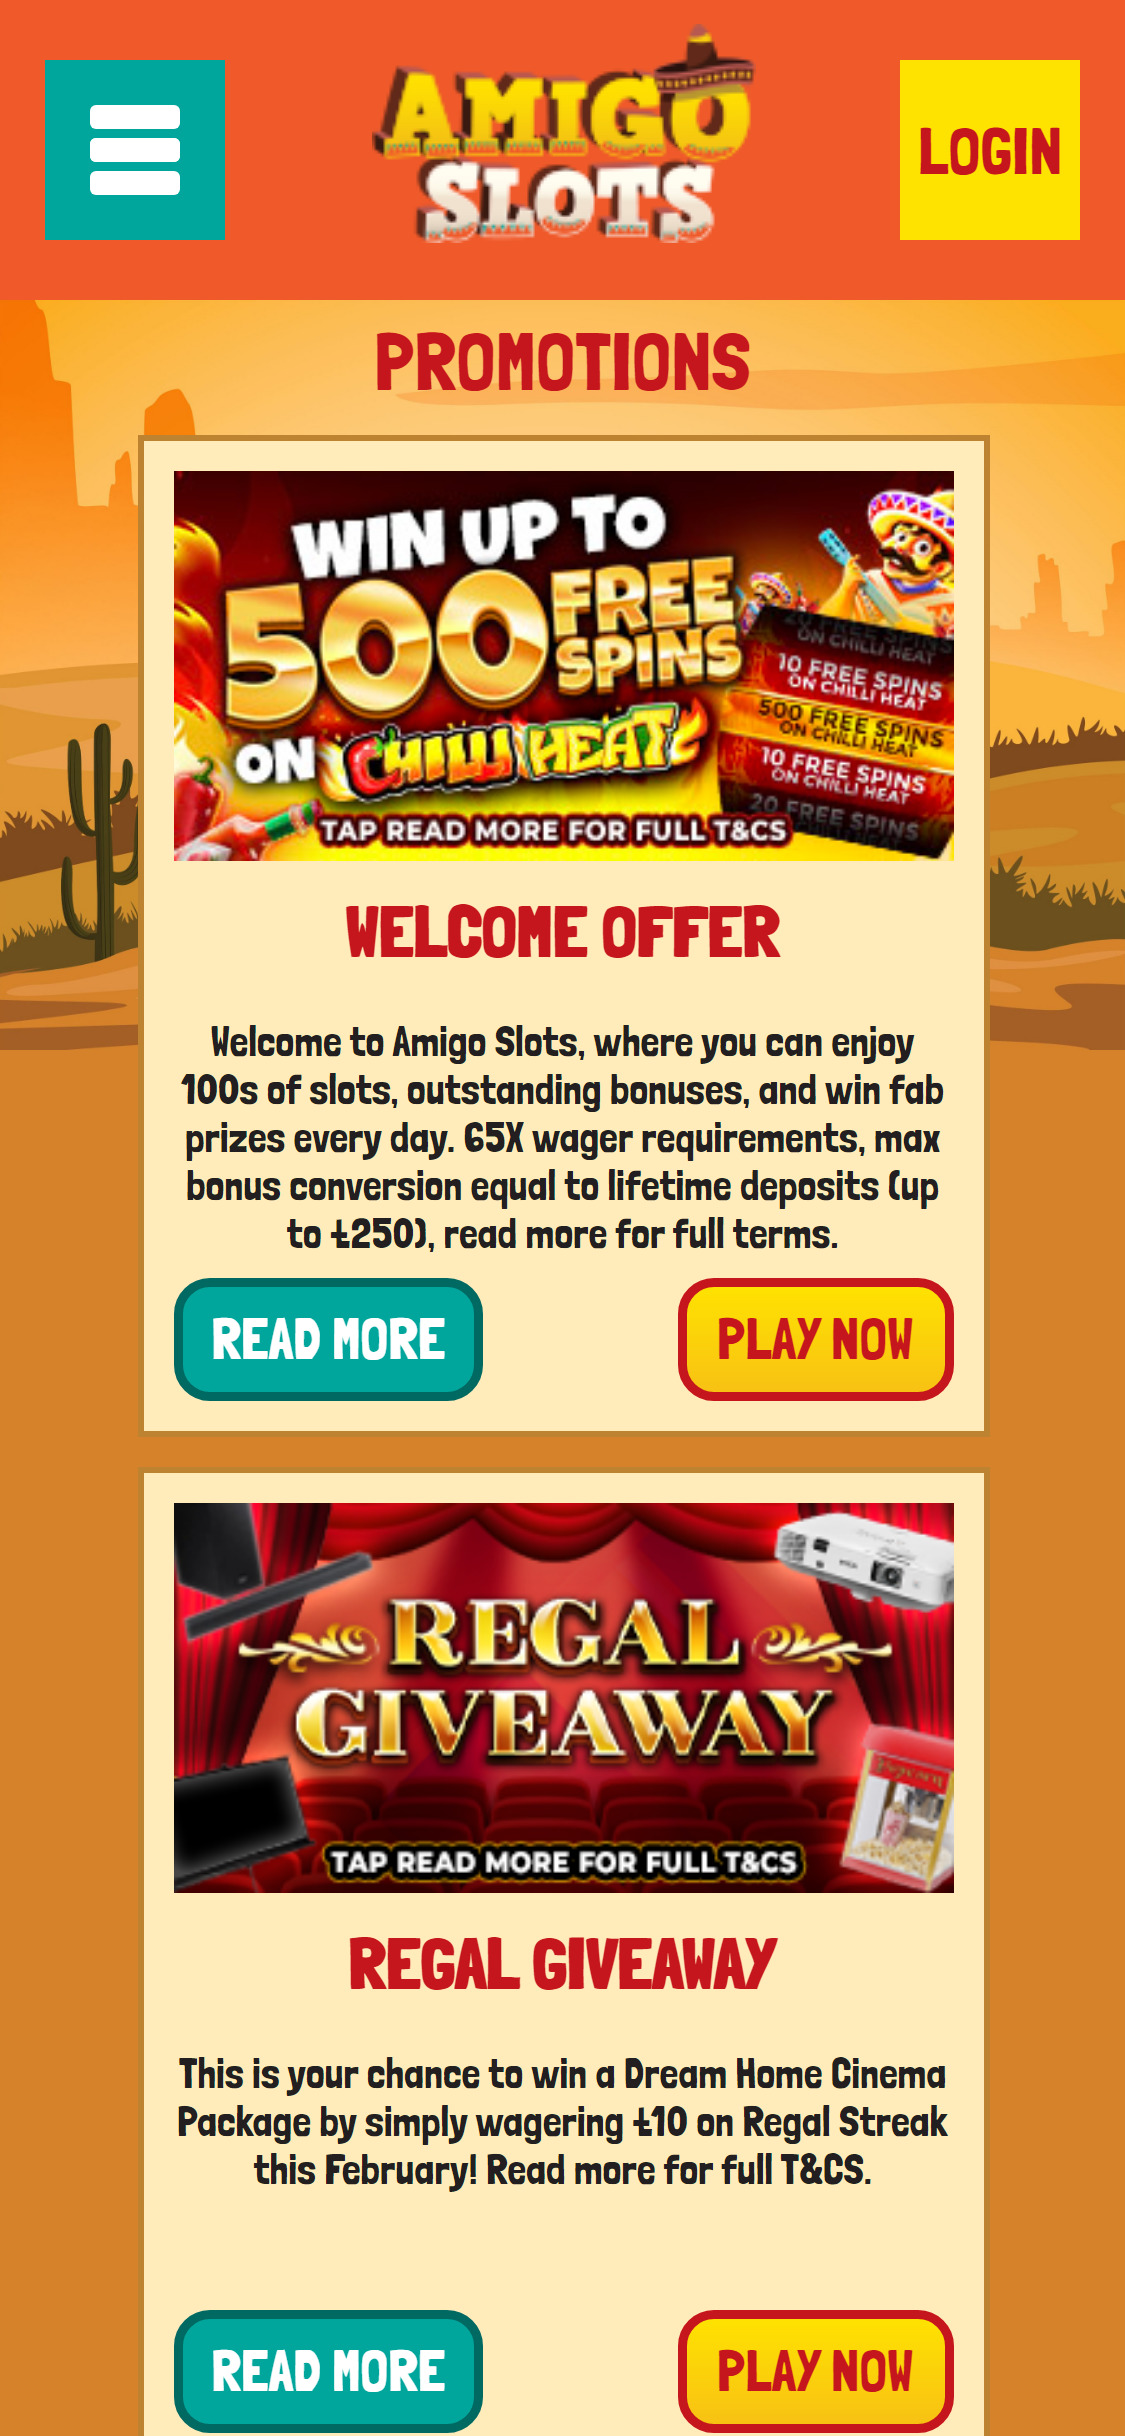 Amigo Slots Casino Mobile No Deposit Bonus Review